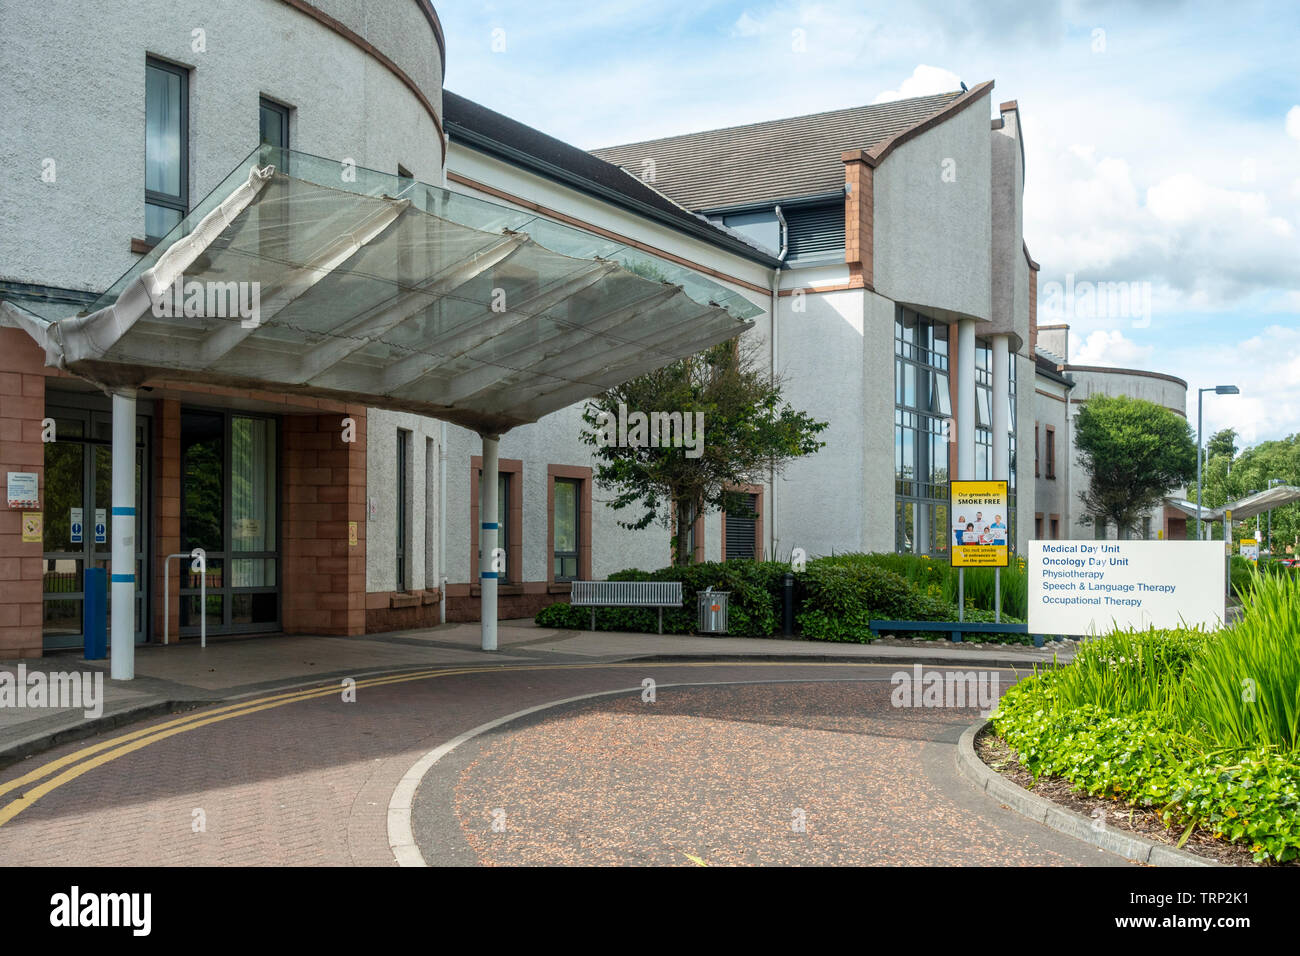 Entrada a varios días de uinits y clínicas del Hospital Universitario de Wishaw, North Lanarkshire, Escocia Foto de stock